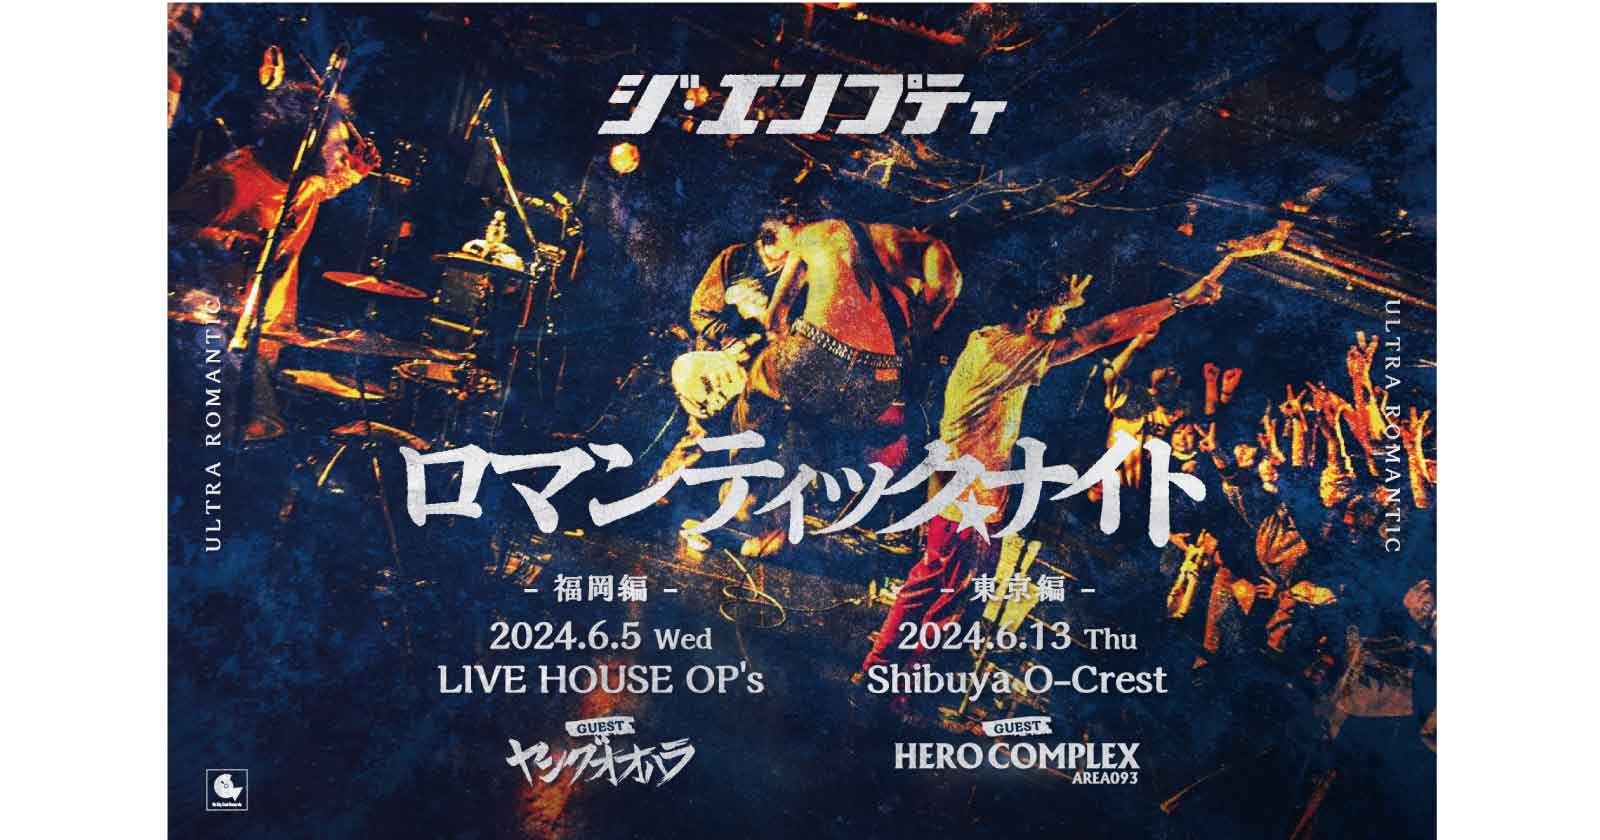 ジ・エンプティ/ HERO COMPLEX_24/6/13